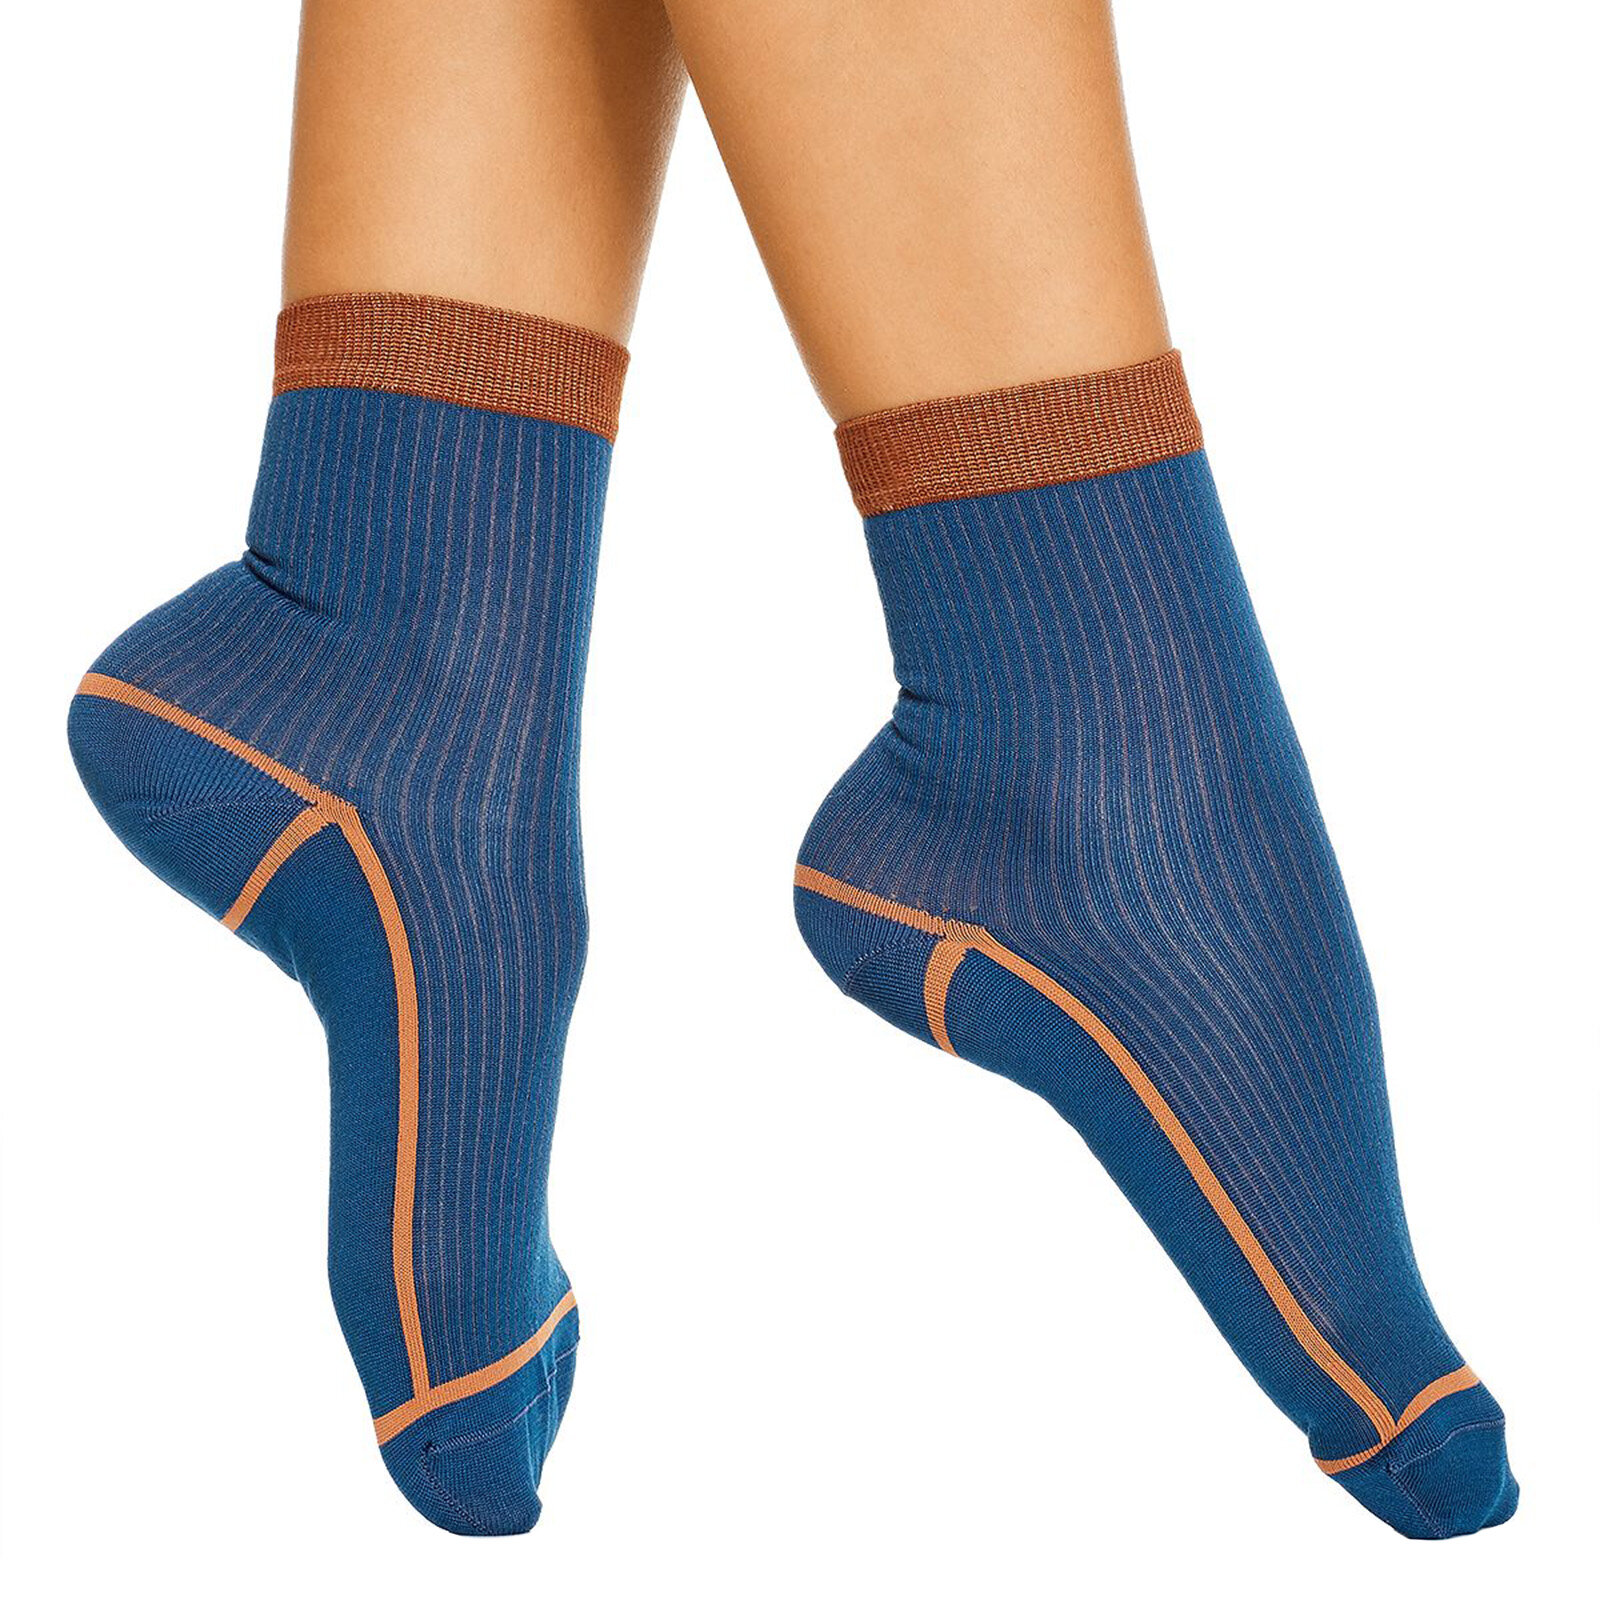 Details about   Field & Stream Yaktrax Women's Cabin Sock Cozy Slipper Socks Green & White NEW 